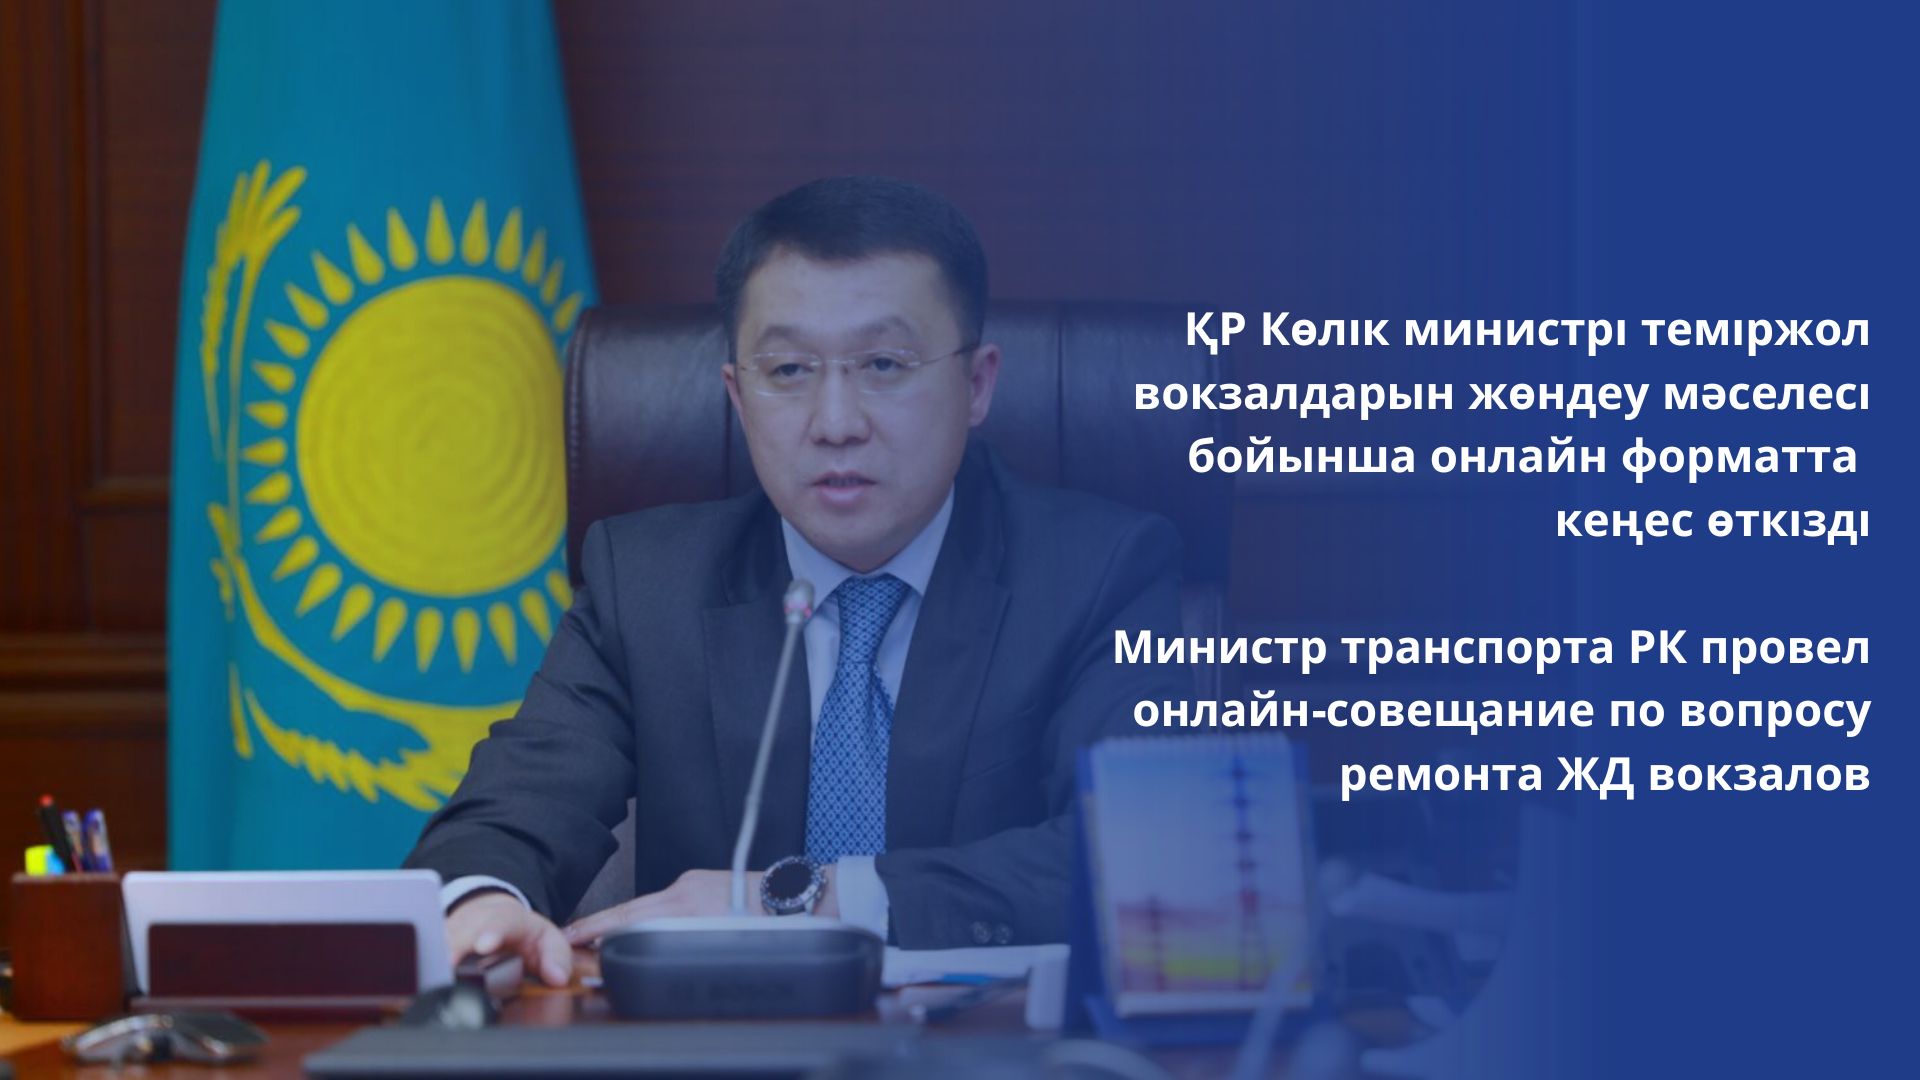 Министр транспорта РК провел онлайн-совещание по вопросу ремонта ЖД вокзалов